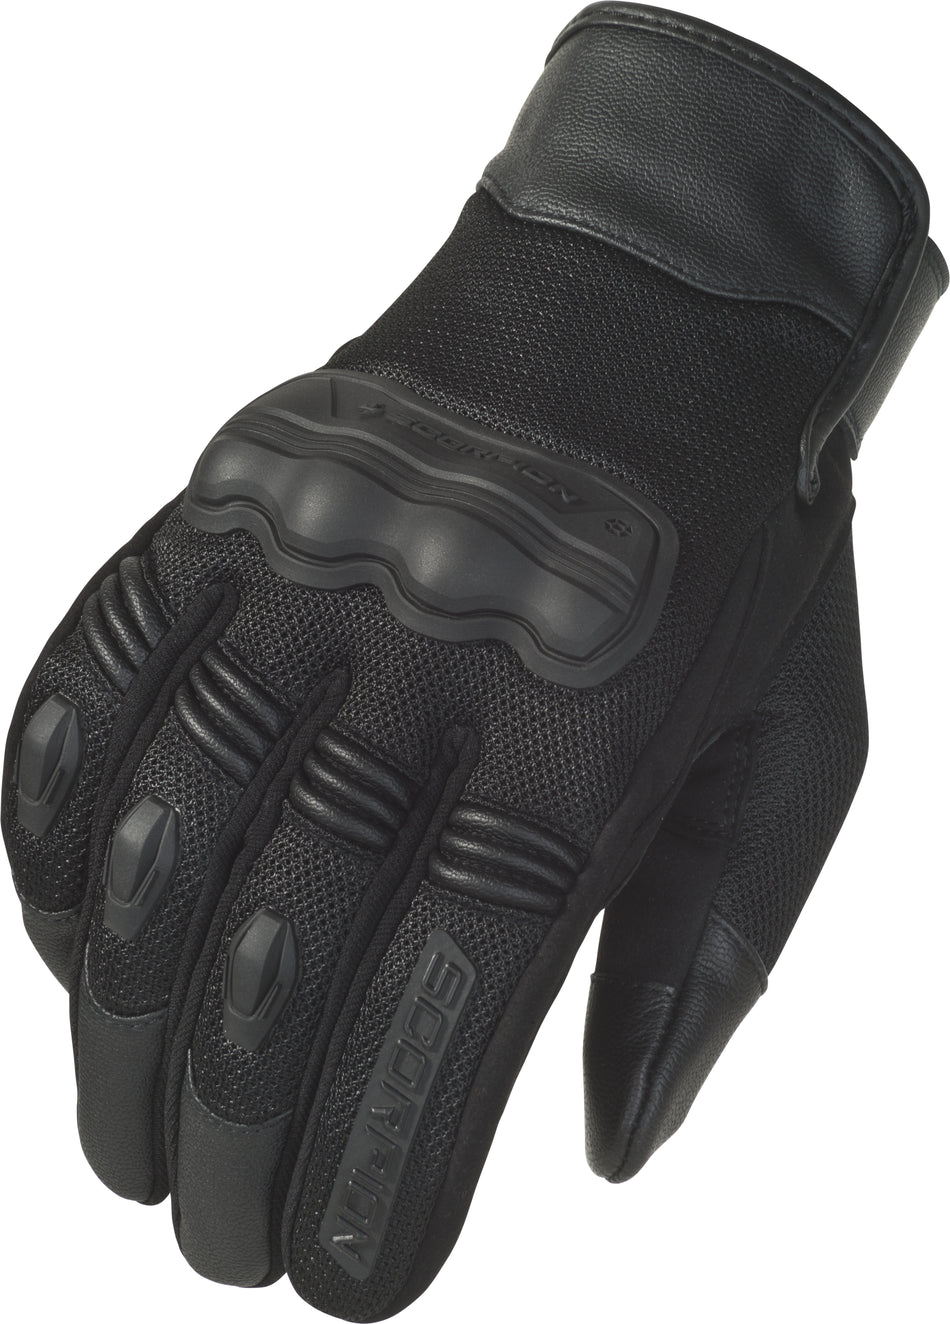 SCORPION EXO Divergent Gloves Black Xl G33-036